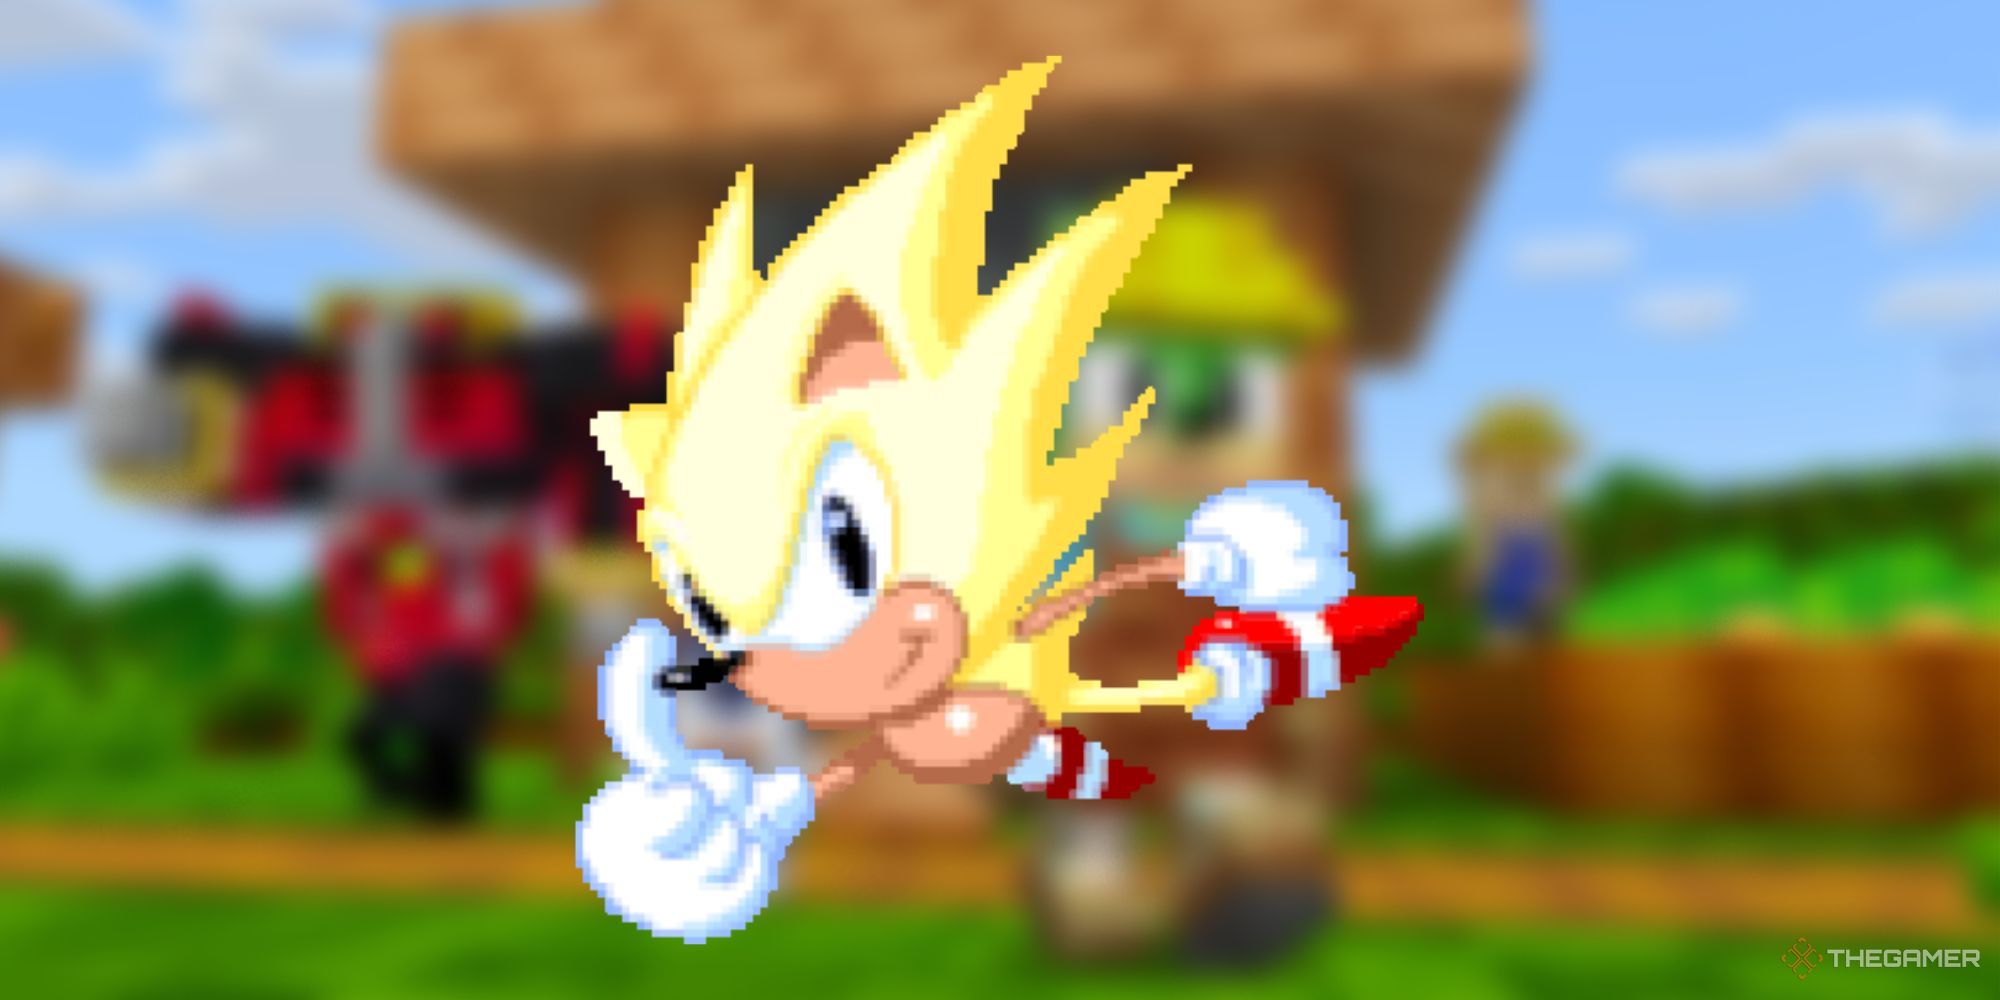 Hyper Sonic Frontiers 